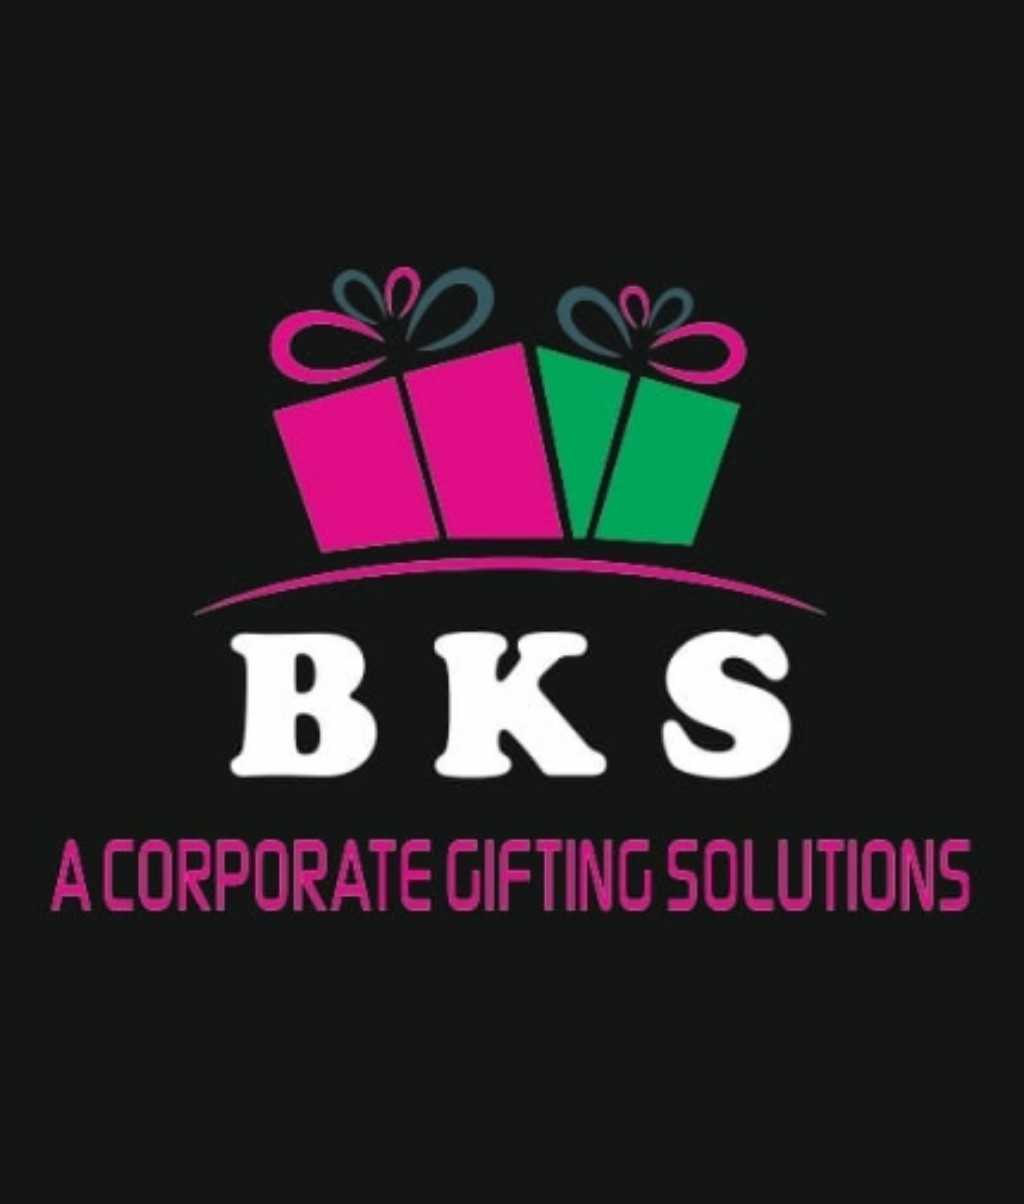 BKS 01 Logo PNG Transparent & SVG Vector - Freebie Supply